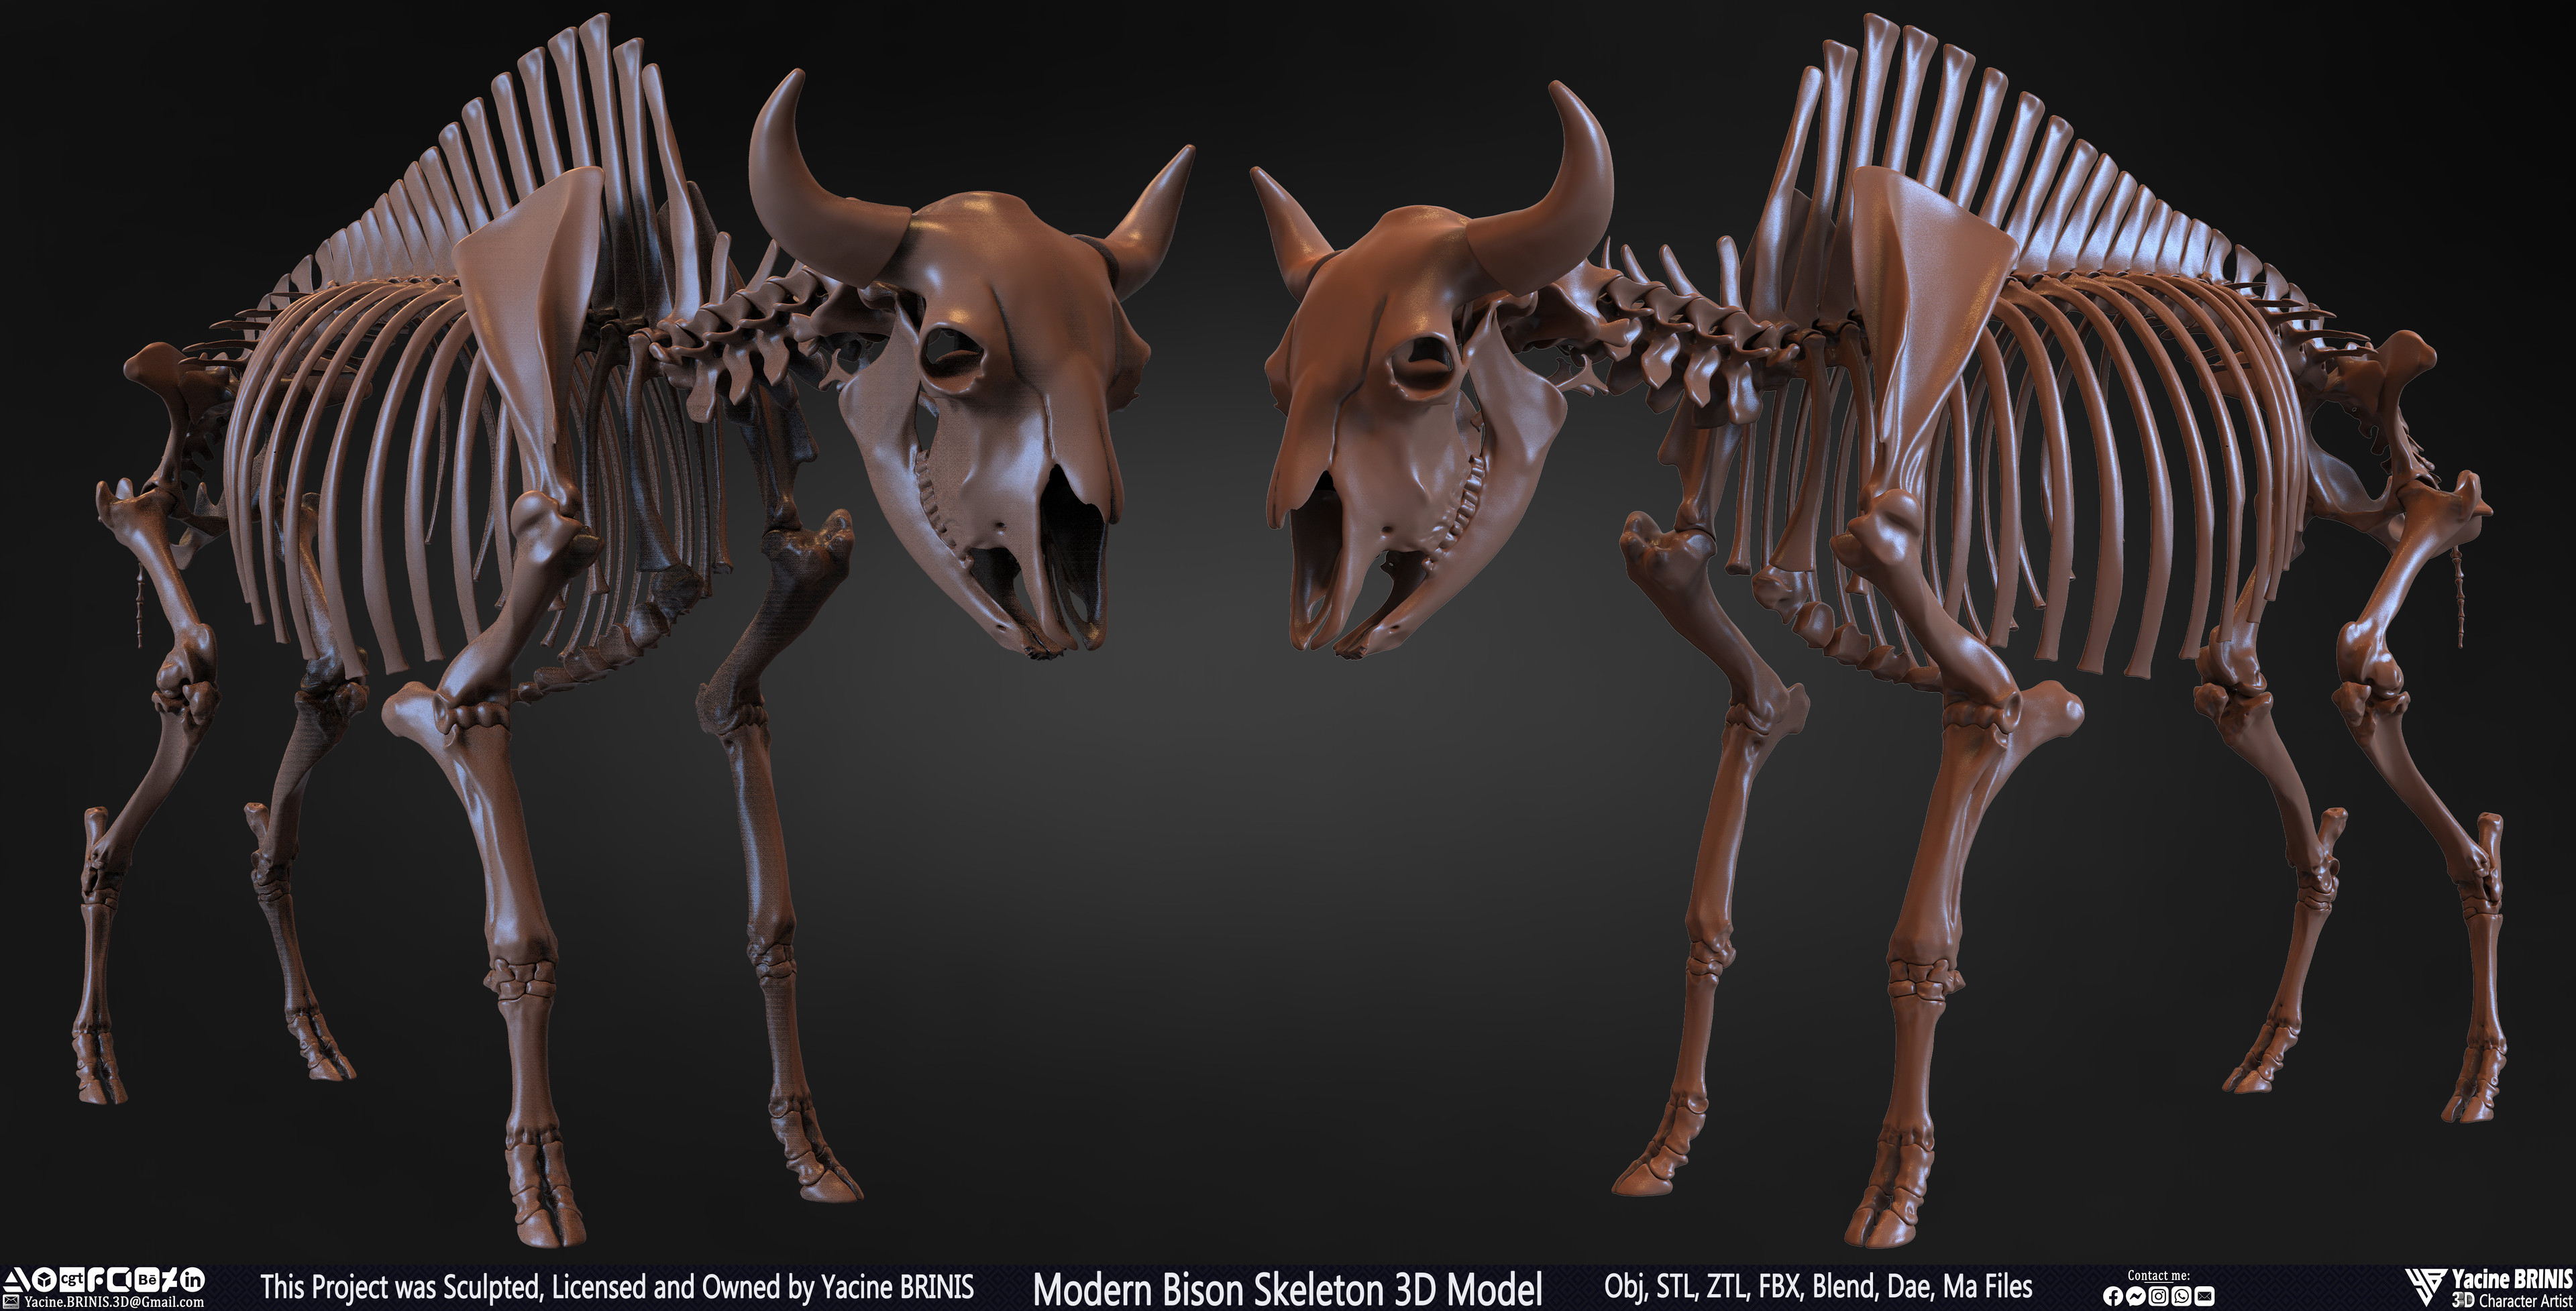 Modern Bison Skeleton 3D Model Sculpted by Yacine BRINIS Set 003